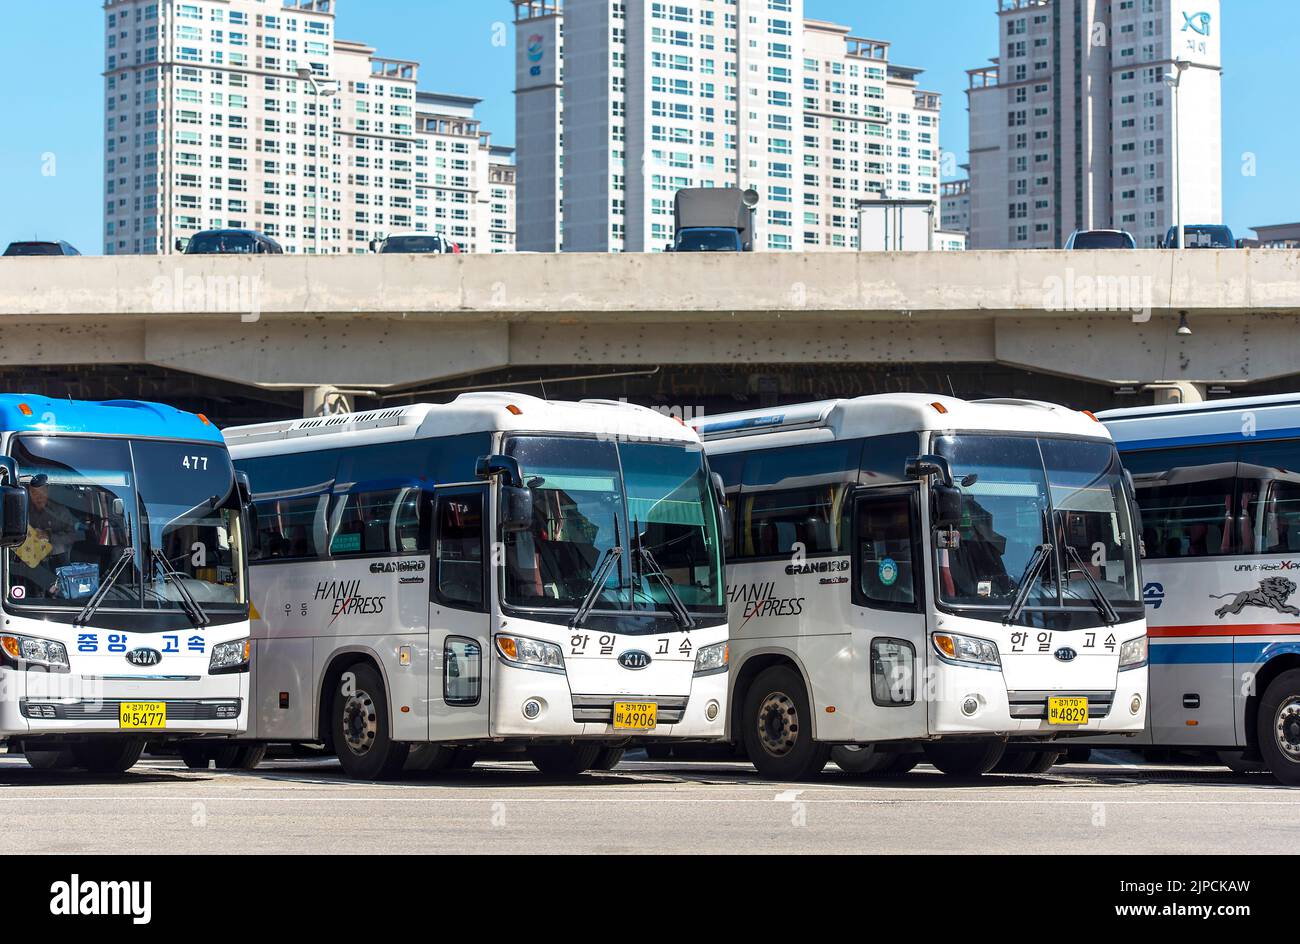 SEÚL - OCT 10: Autobuses con el logotipo Hanil Express en la estación principal de autobuses de Seúl, 10 de octubre. 2016 en Corea del Sur. Foto de stock